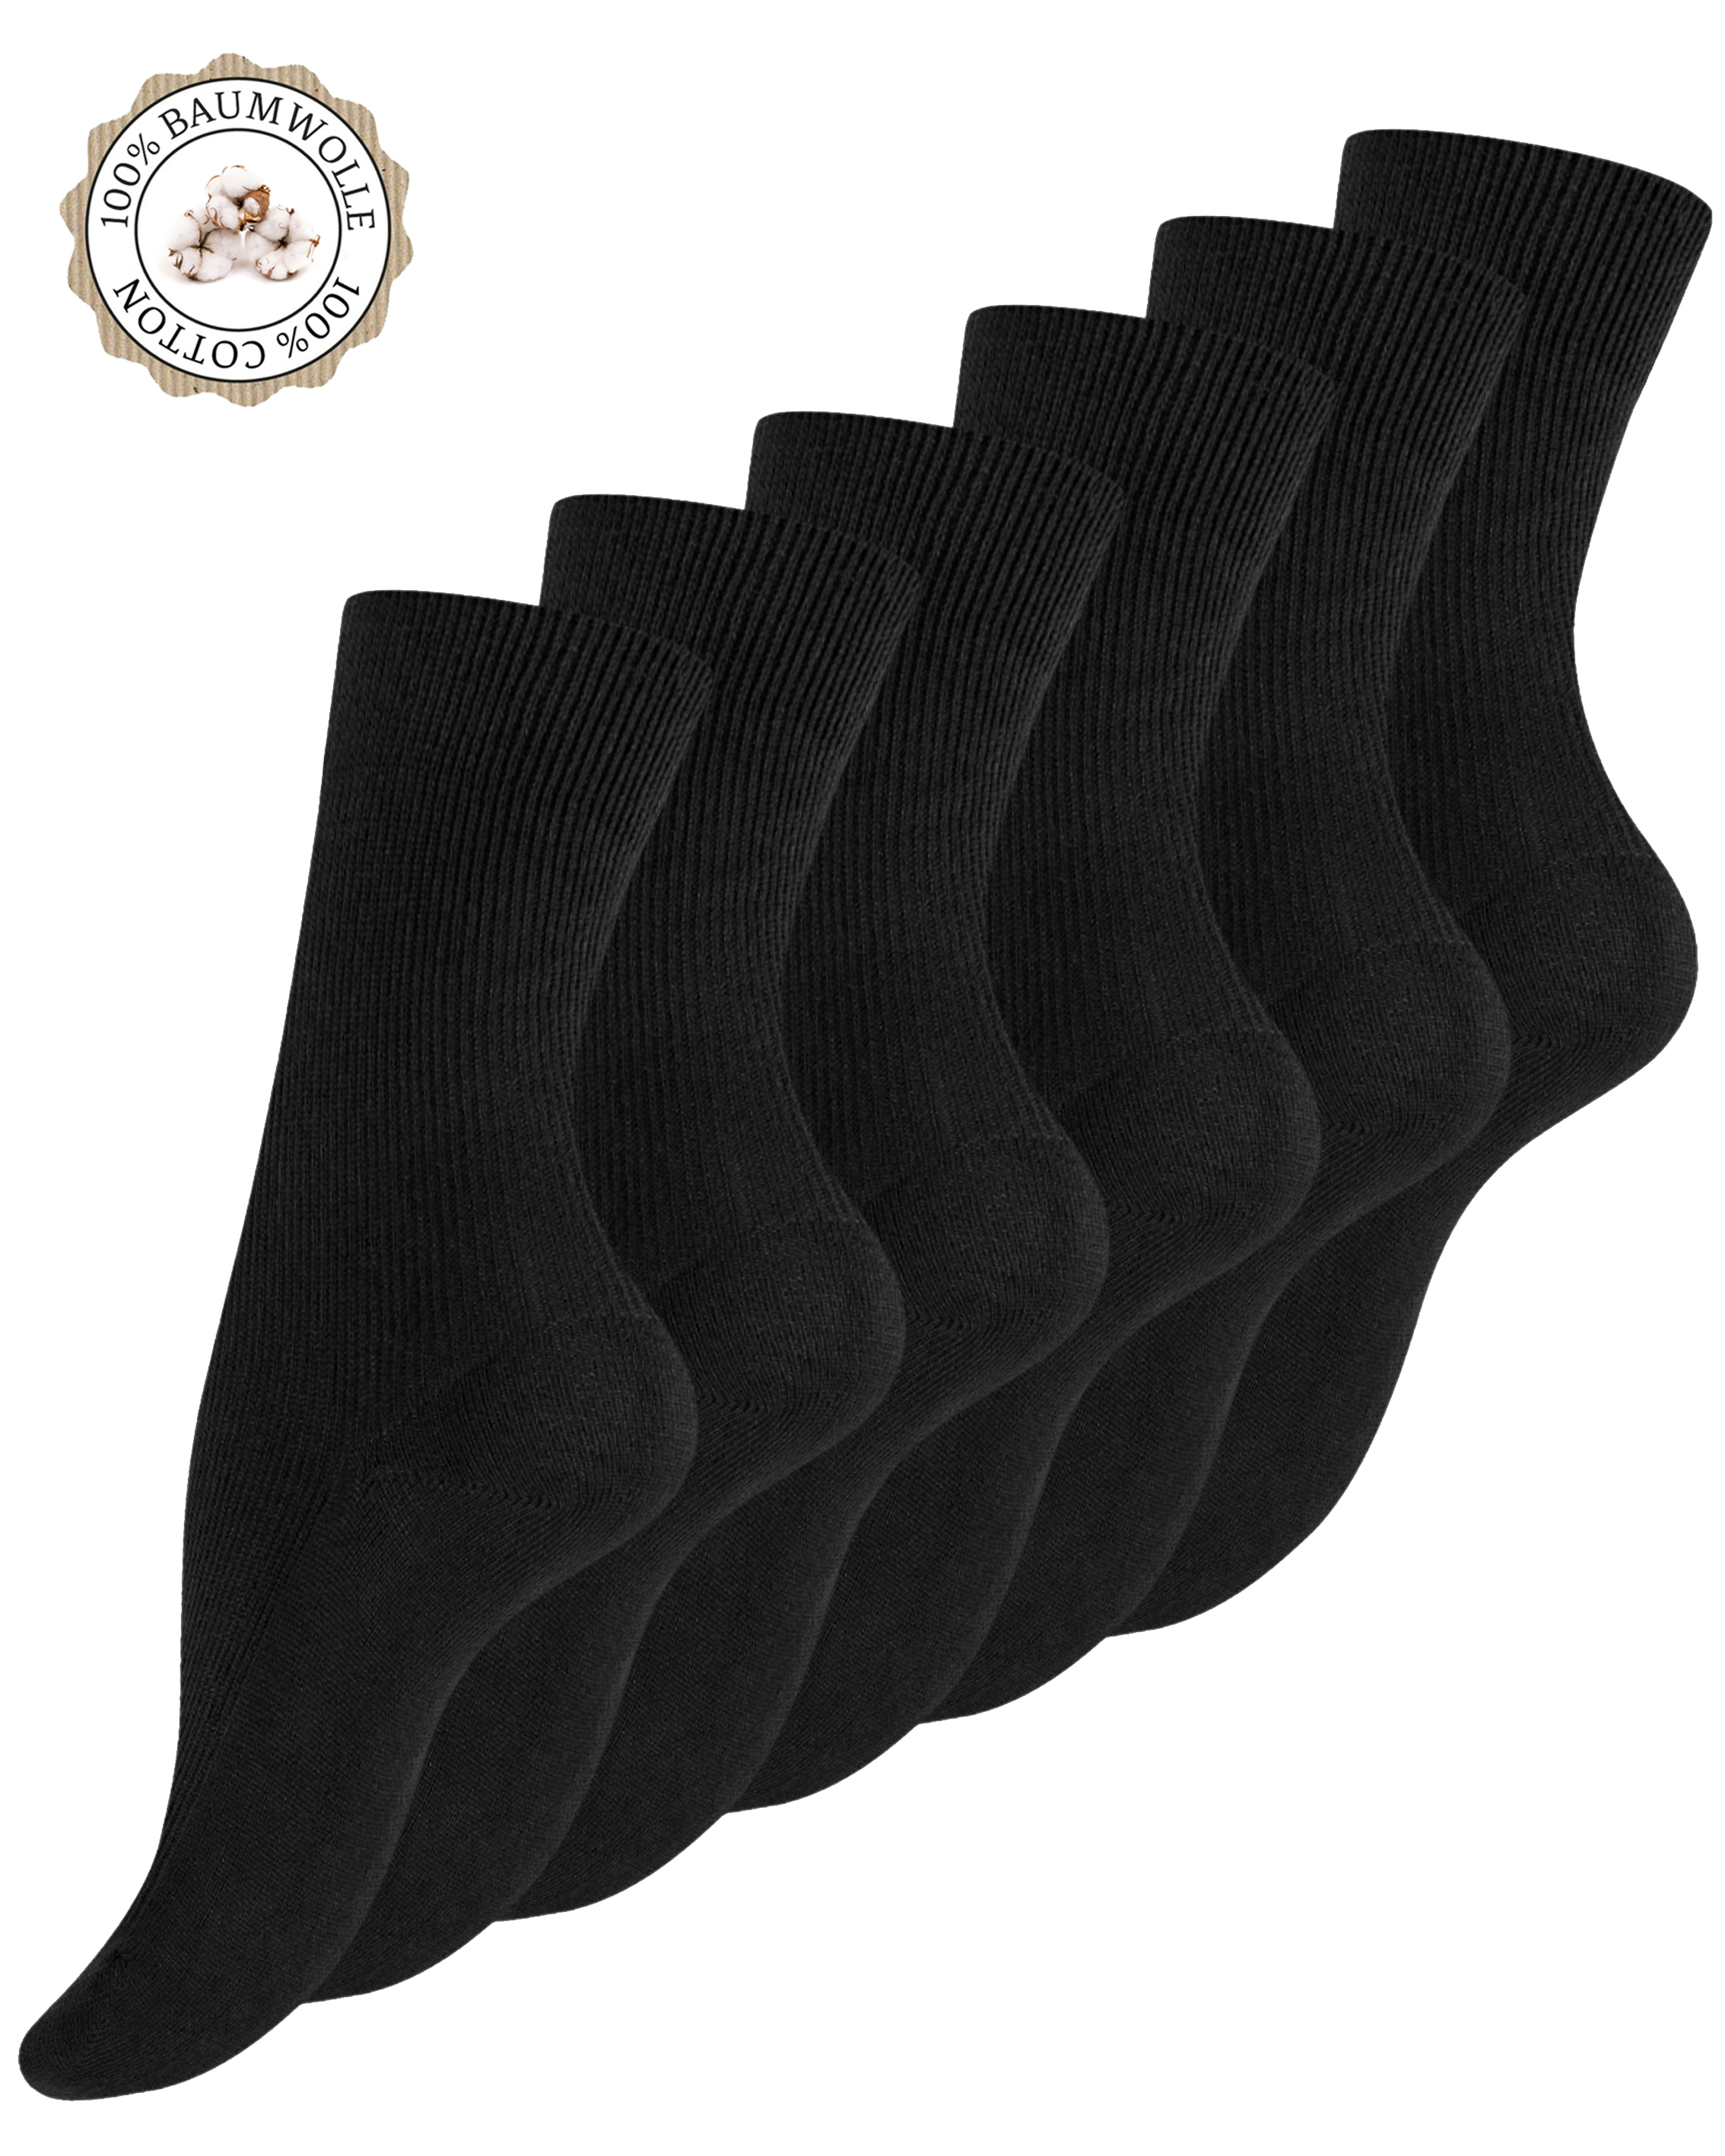 15 Paar Herren Kellner Socken schwarz 100% Baumwolle ohne Naht Sonderaktion 